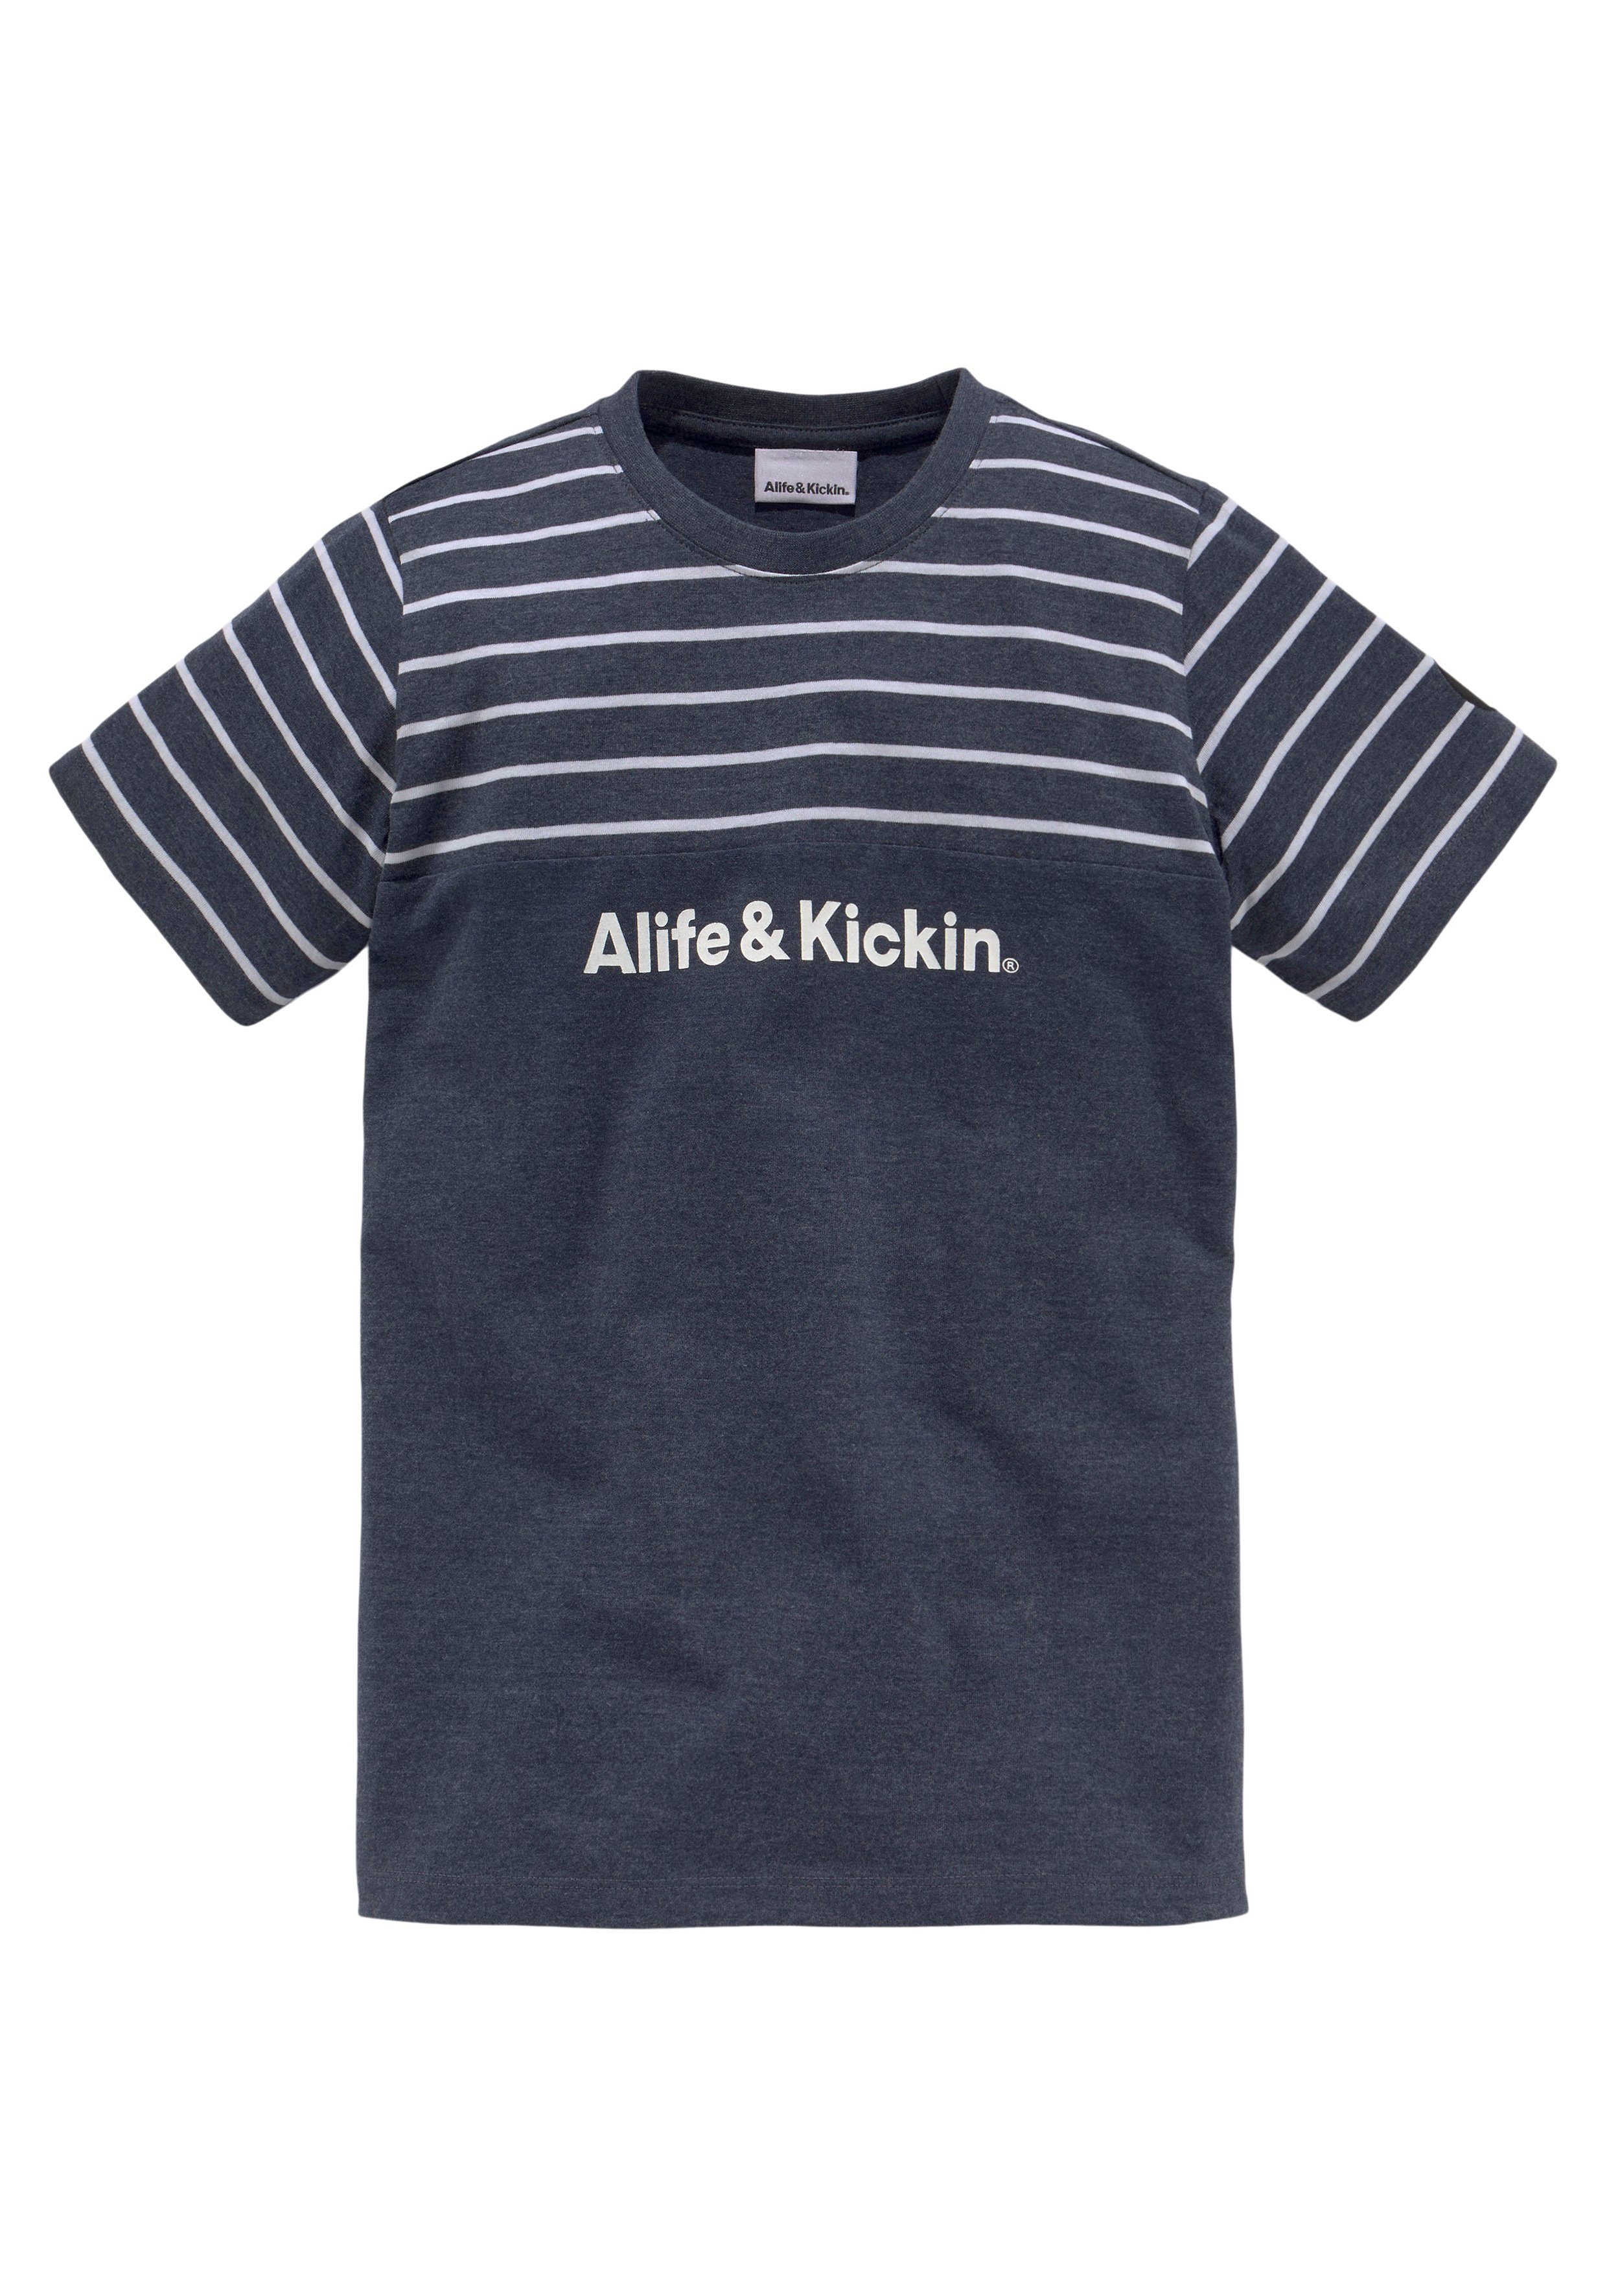 Alife & Kickin T-Shirt und Ringel, melierter NEUE Colorblocking MARKE! garngefärbten Qualität in